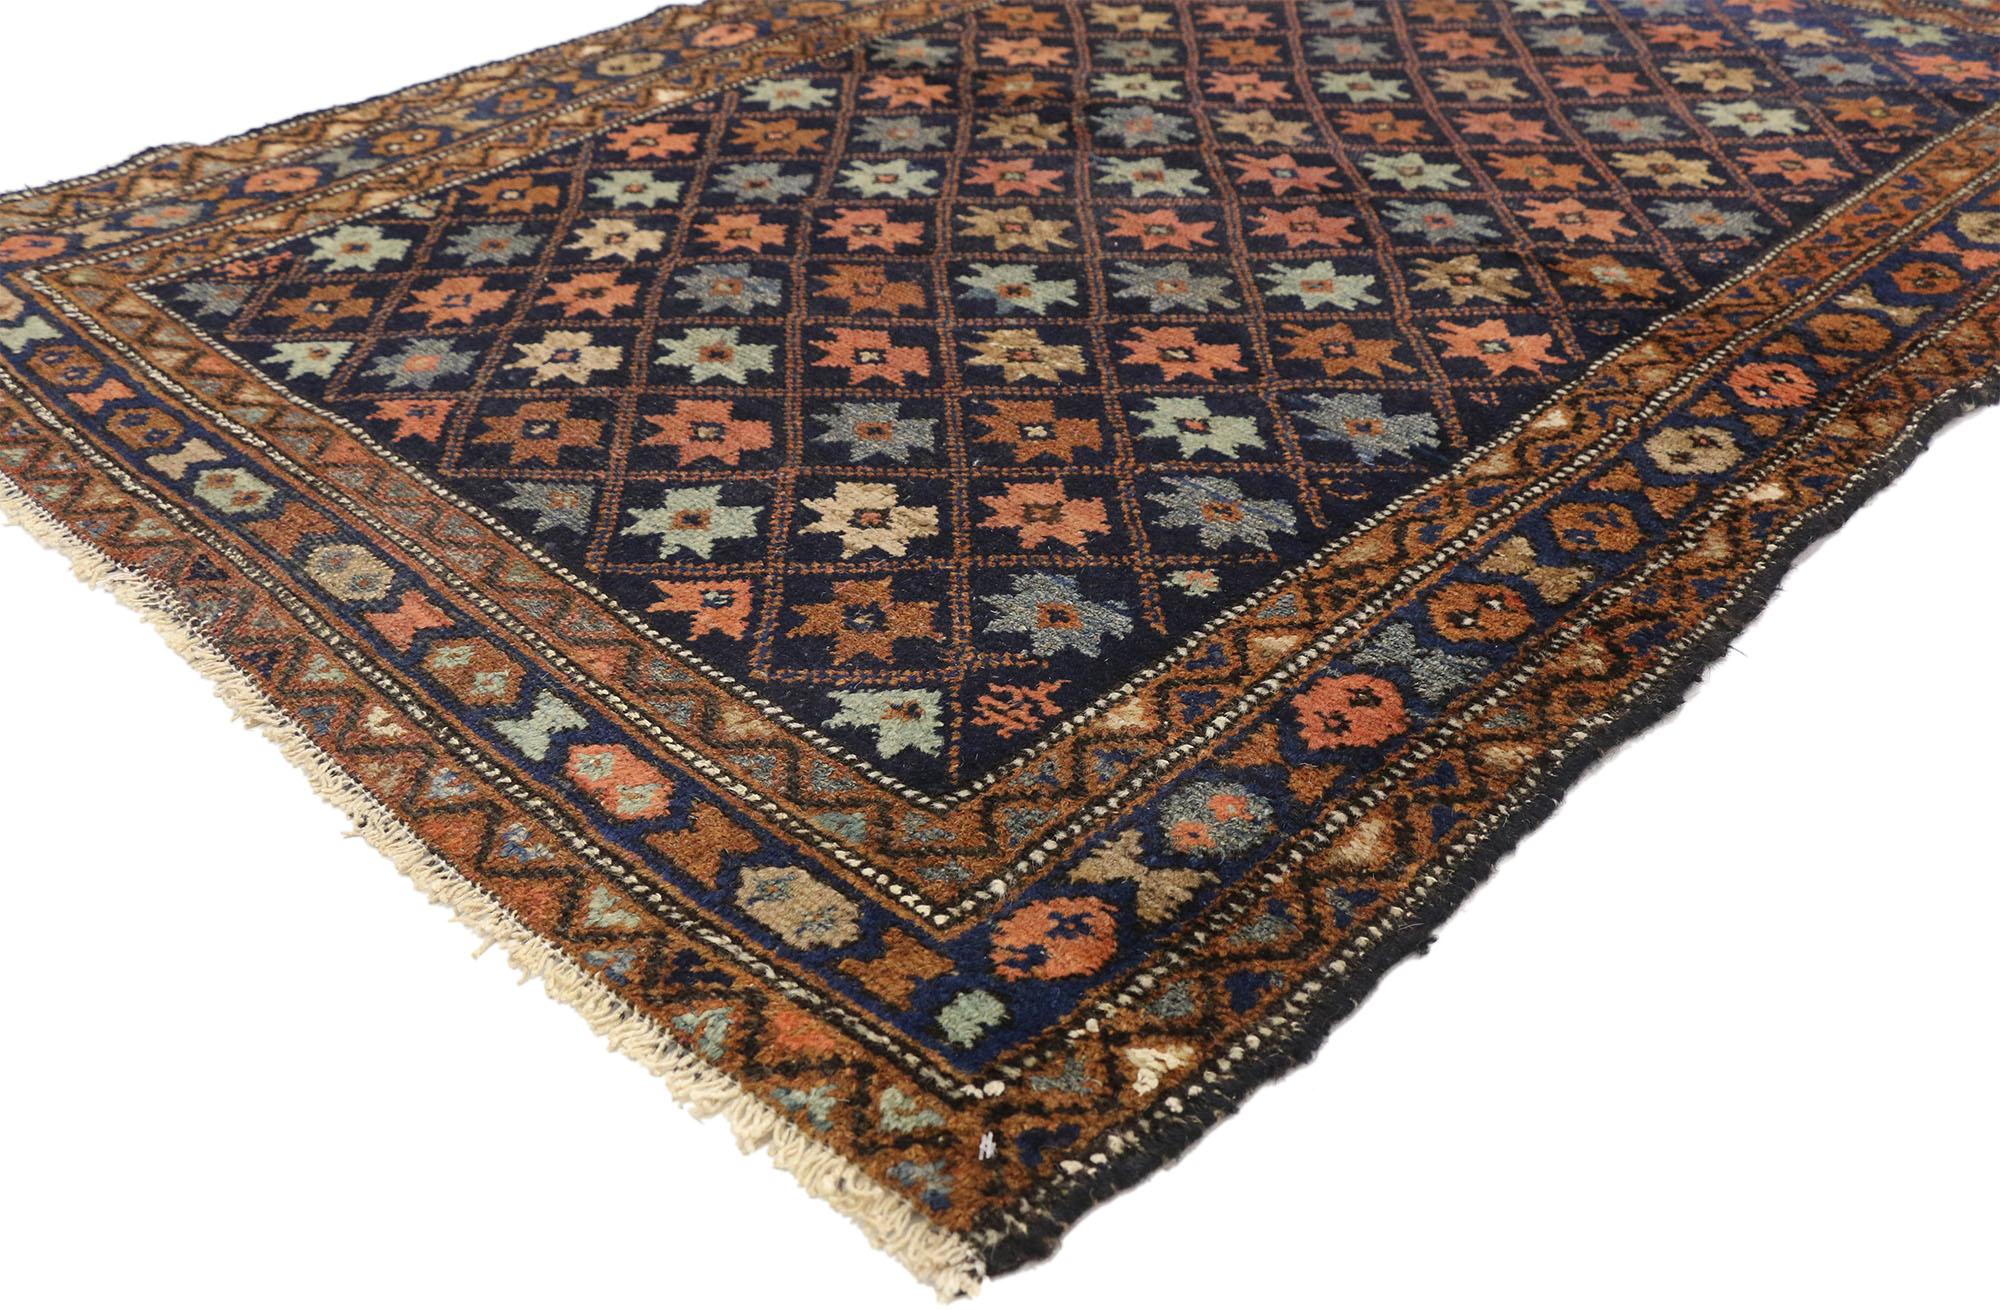 73301 Antique tapis persan Hamadan avec style tribal 03'08 x 05'04. Plein de détails minuscules et d'un design expressif audacieux combiné à des couleurs vibrantes et à un style tribal, ce tapis persan Hamadan ancien en laine noué à la main est une